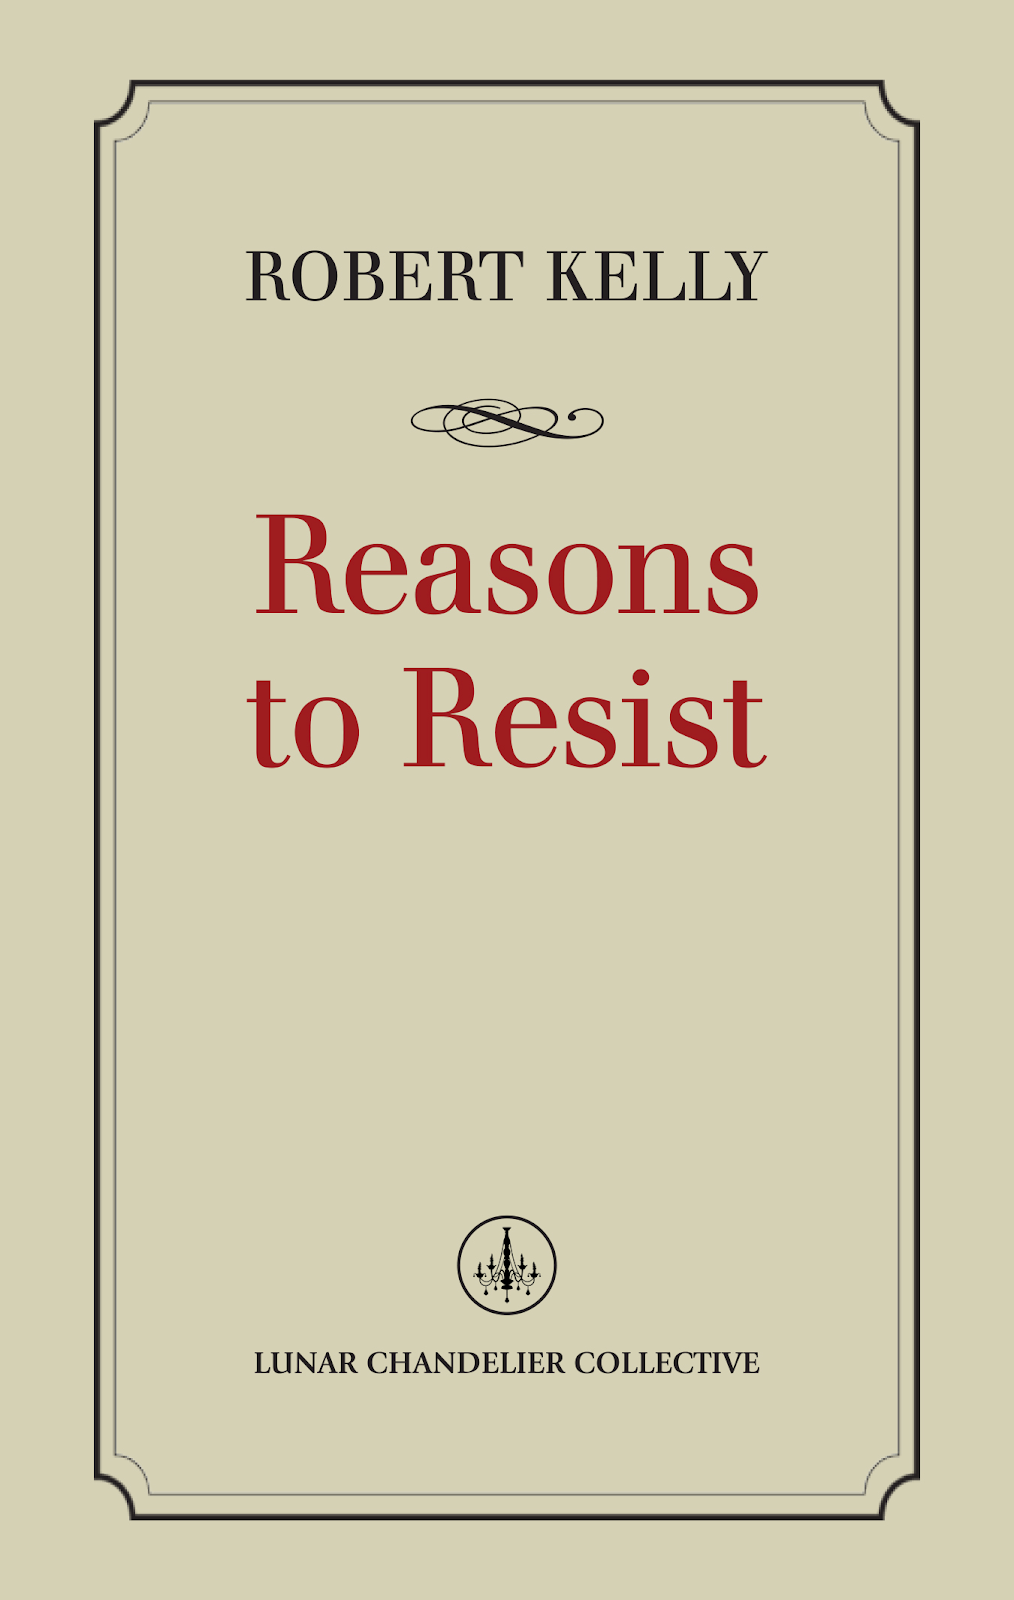 Reasons to Resist, by Robert Kelly